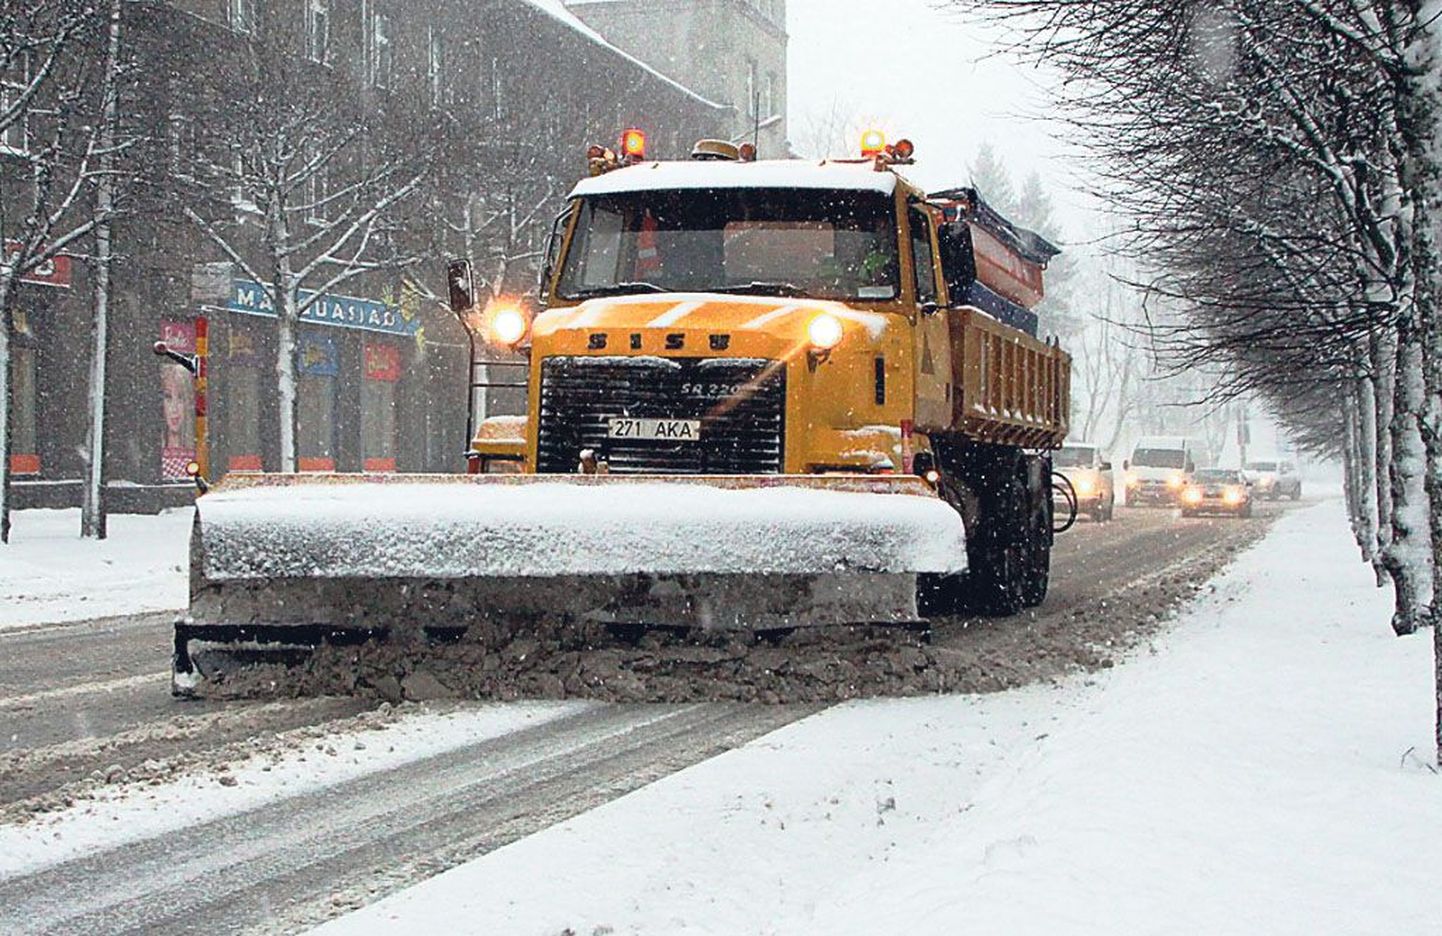 Mullused talihooldustööd Pärnu tänavatel läksid rohke lume tõttu arvatust kallimaks, mistõttu esitatud arved kontrollitakse linna majandusosakonnas hoolikalt üle.